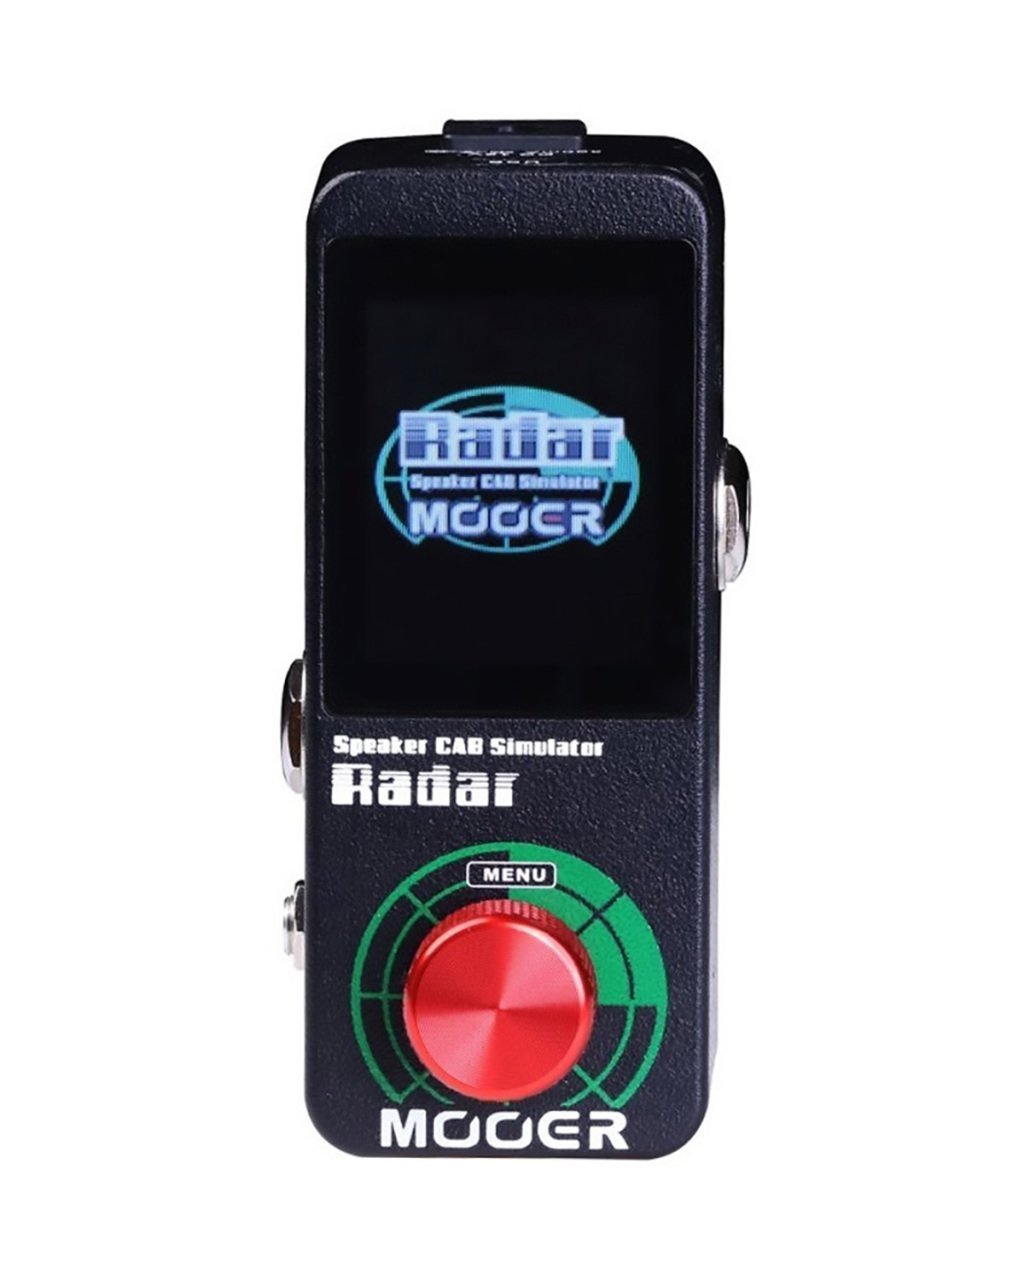 Mooer MSS1 Micro Cab. Sim. Radar Speaker CAB Simulator